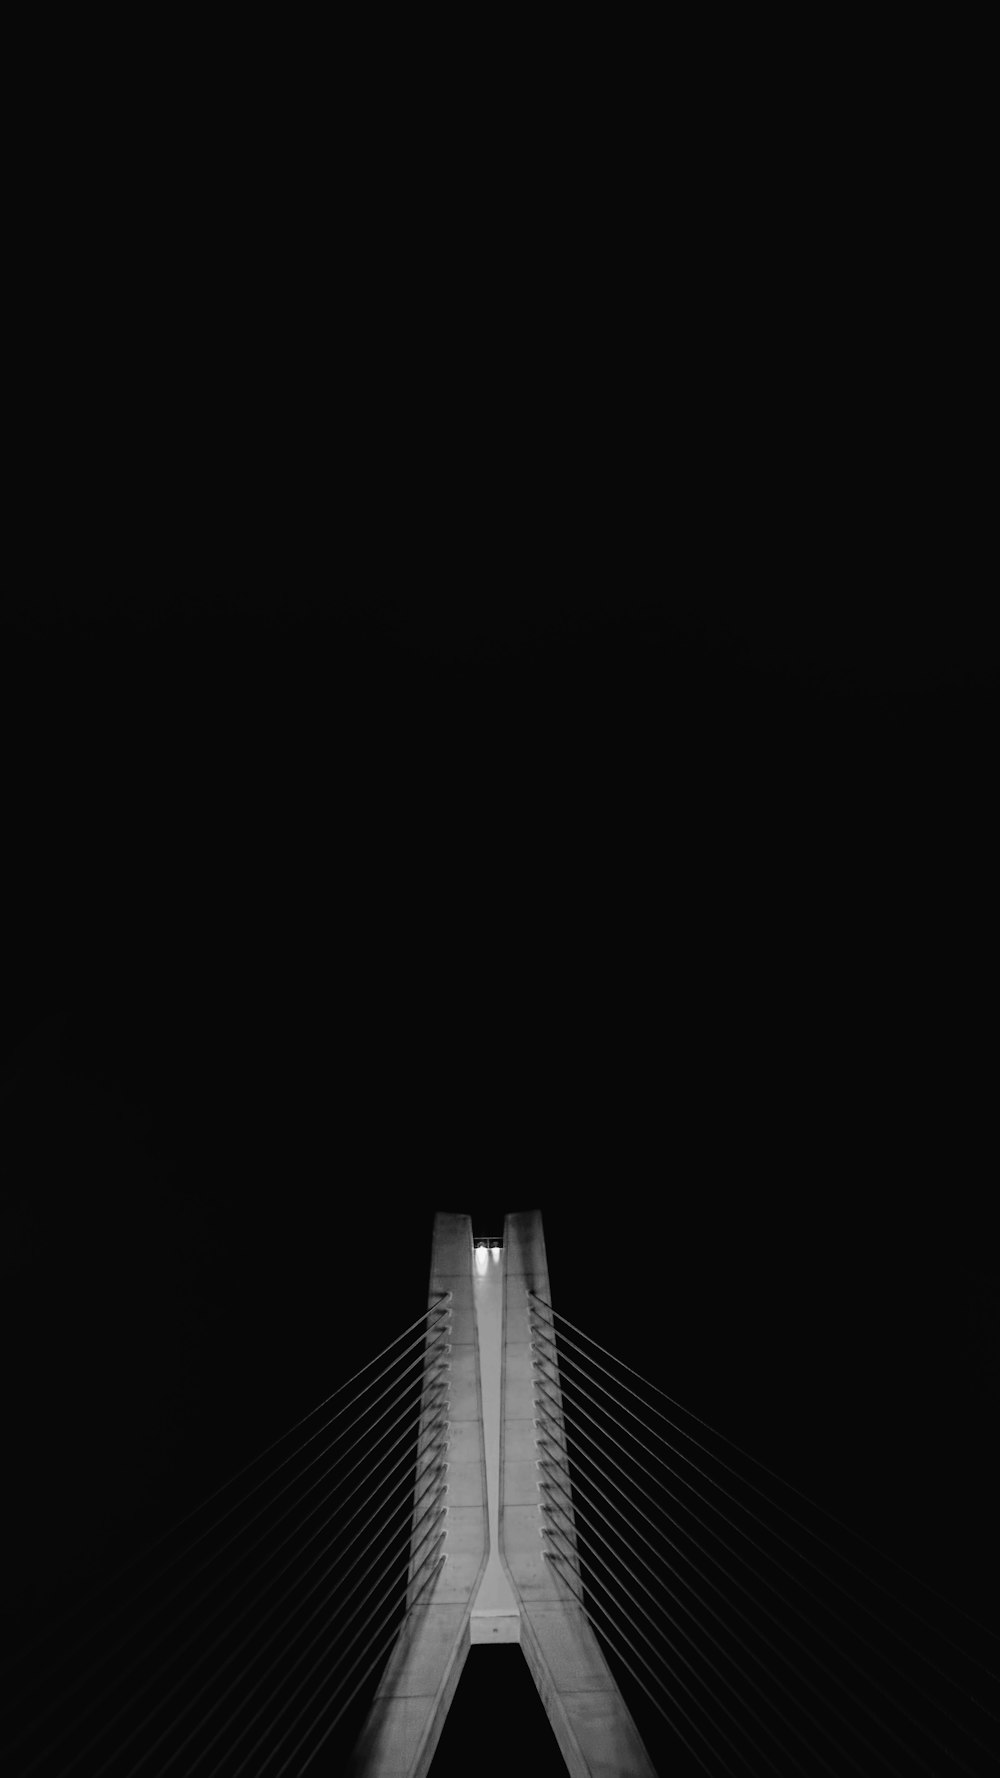 ケーブル付き橋柱のローアングル写真